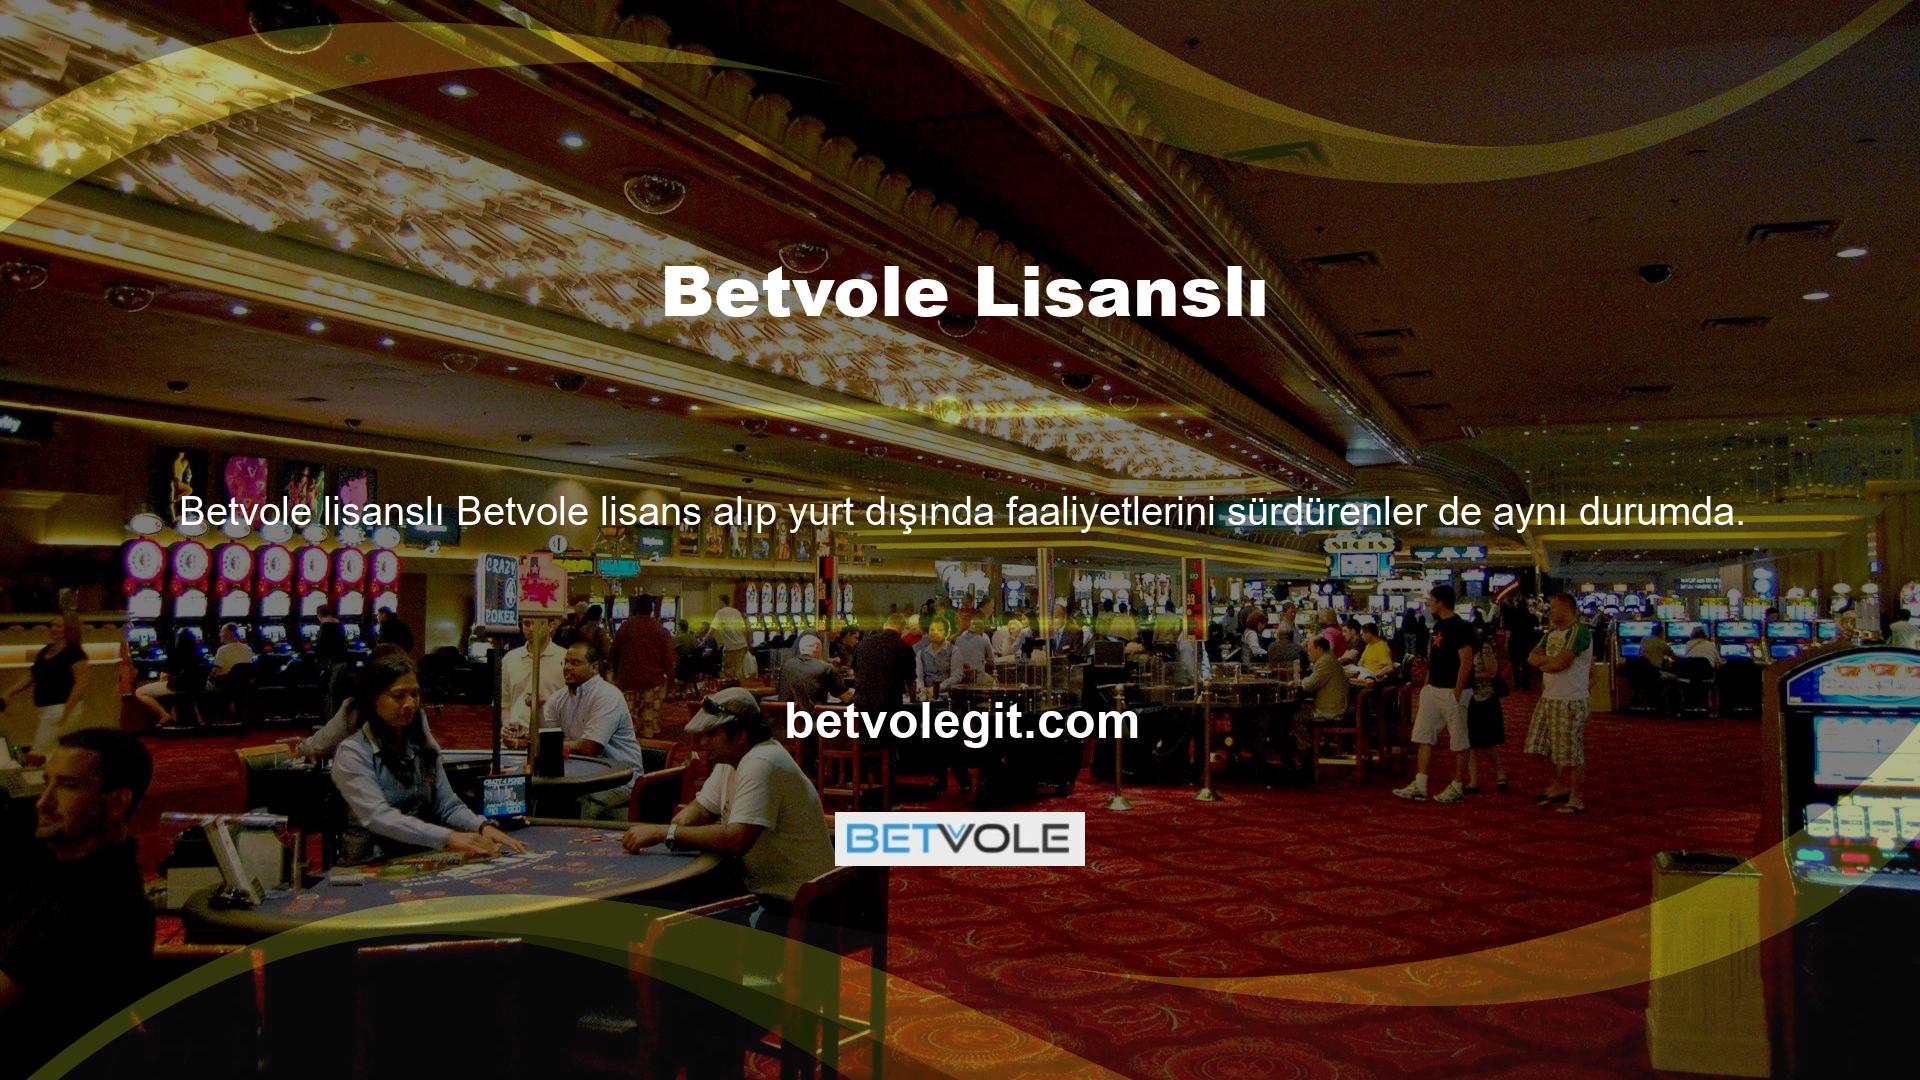 Betvole tarafından sağlanan platform, Türk müşterilerine sunduğu olağanüstü hizmetle tanınıyor